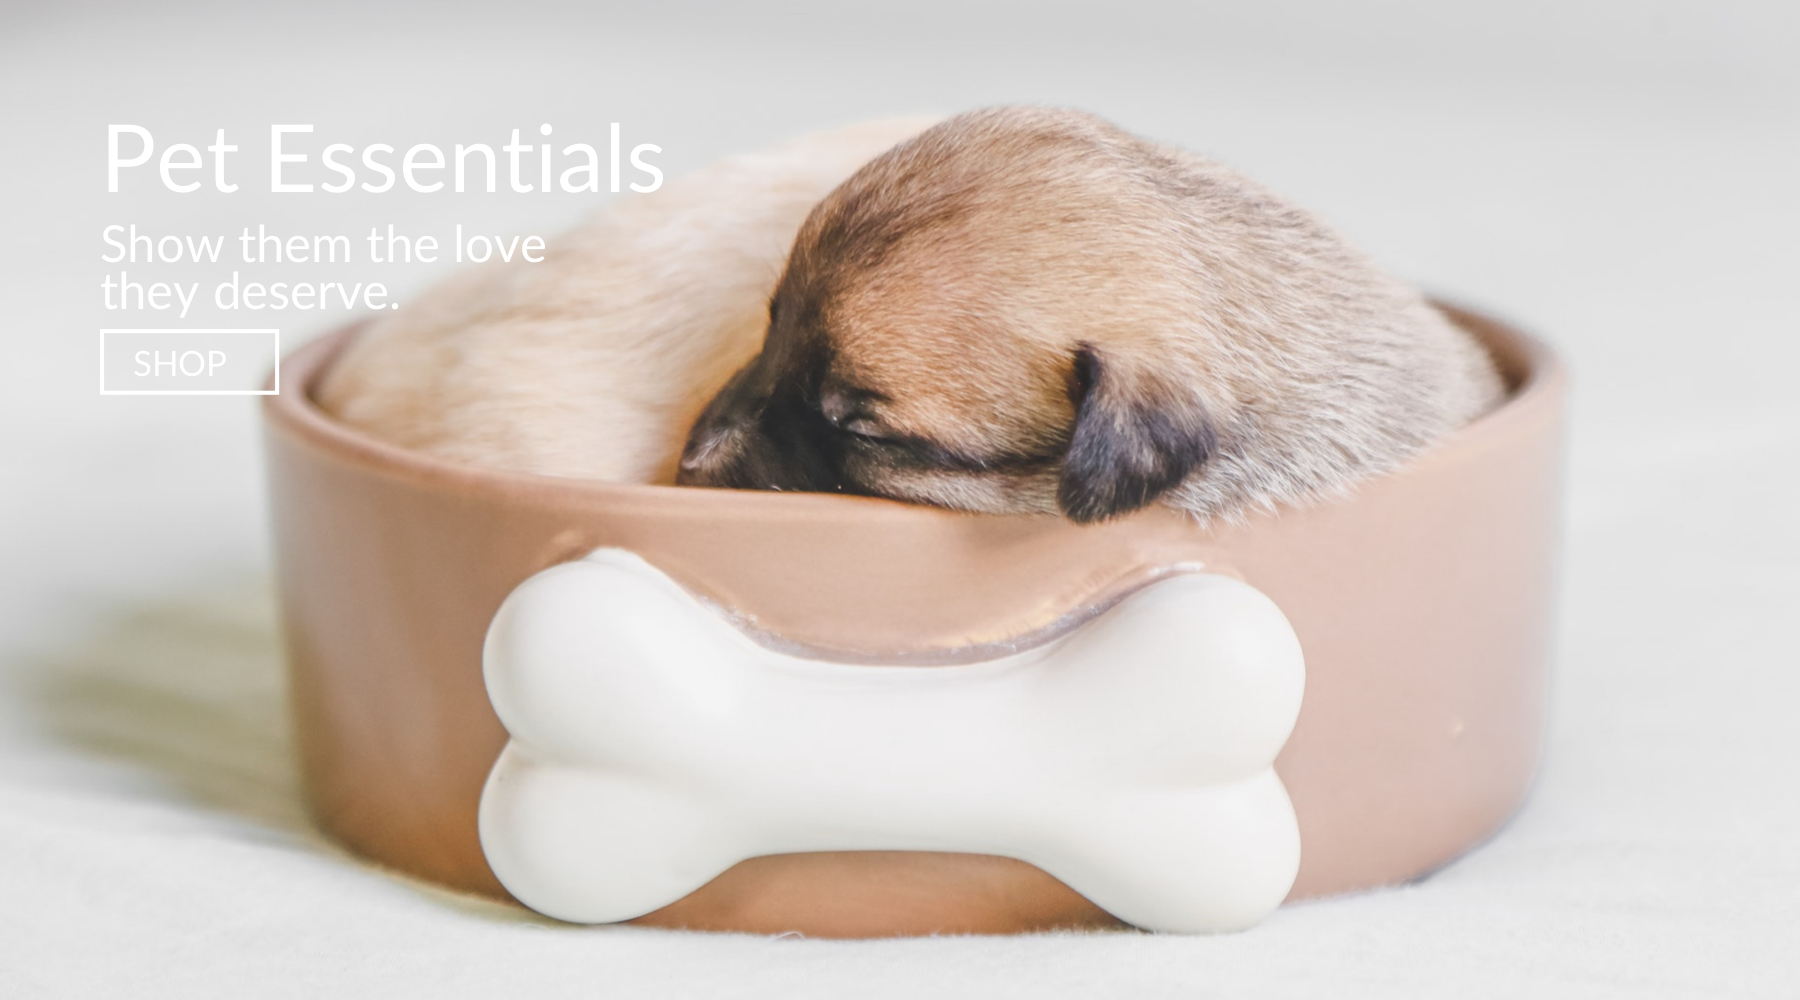 Pet Essentials - Show your pets the love they deserve - lyren.com